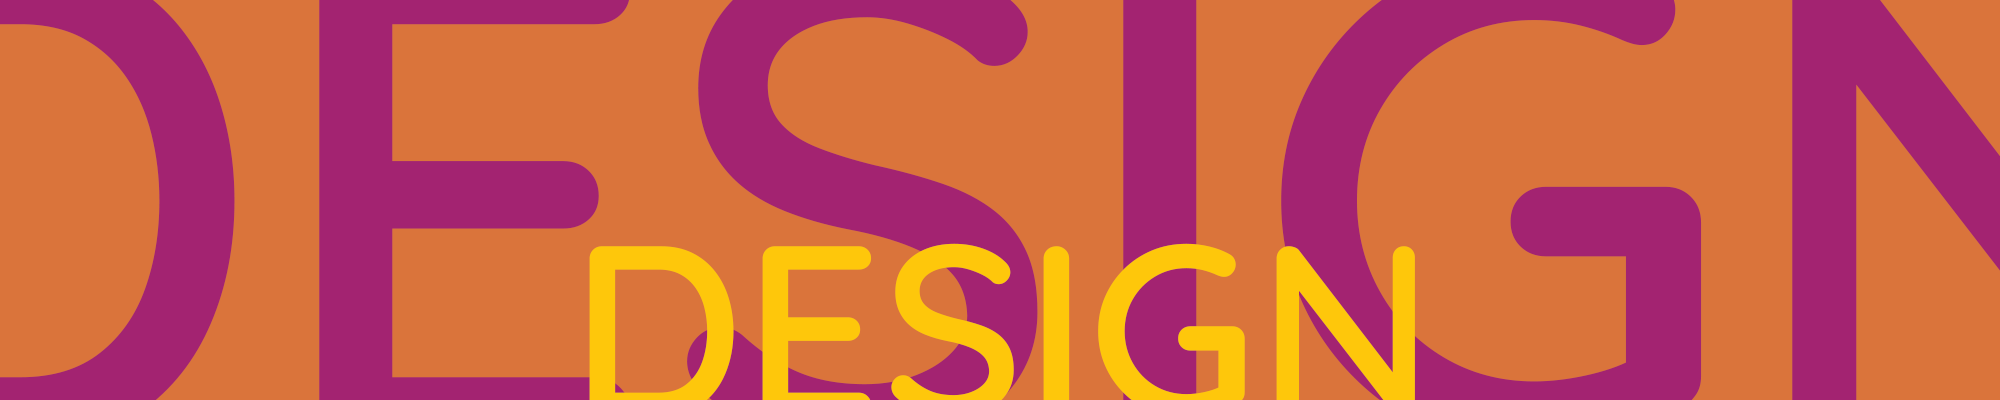 Graphic Design Services Header